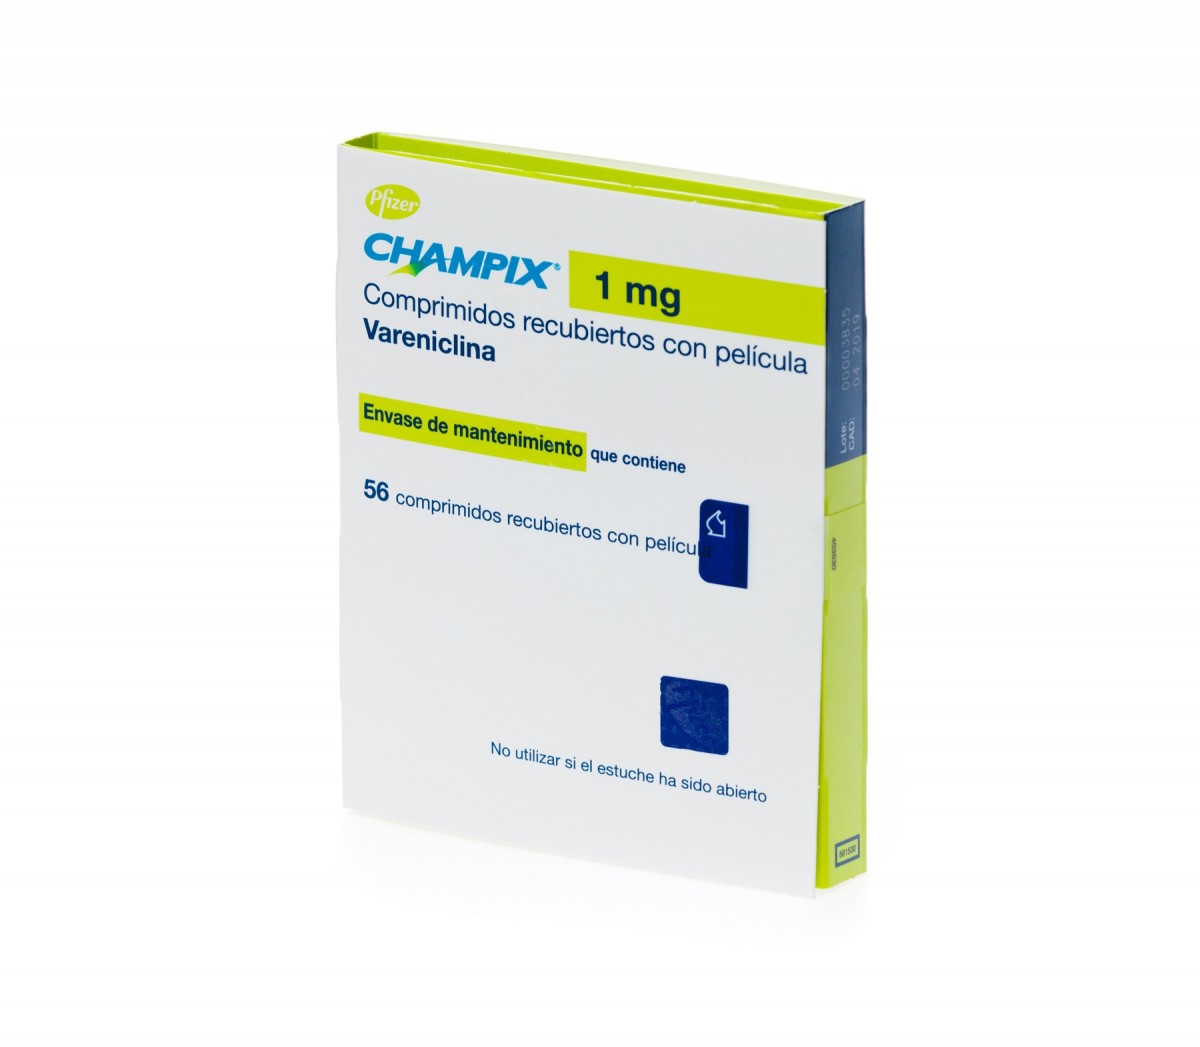 CHAMPIX 1 mg COMPRIMIDOS RECUBIERTOS CON PELICULA, 56 comprimidos fotografía del envase.